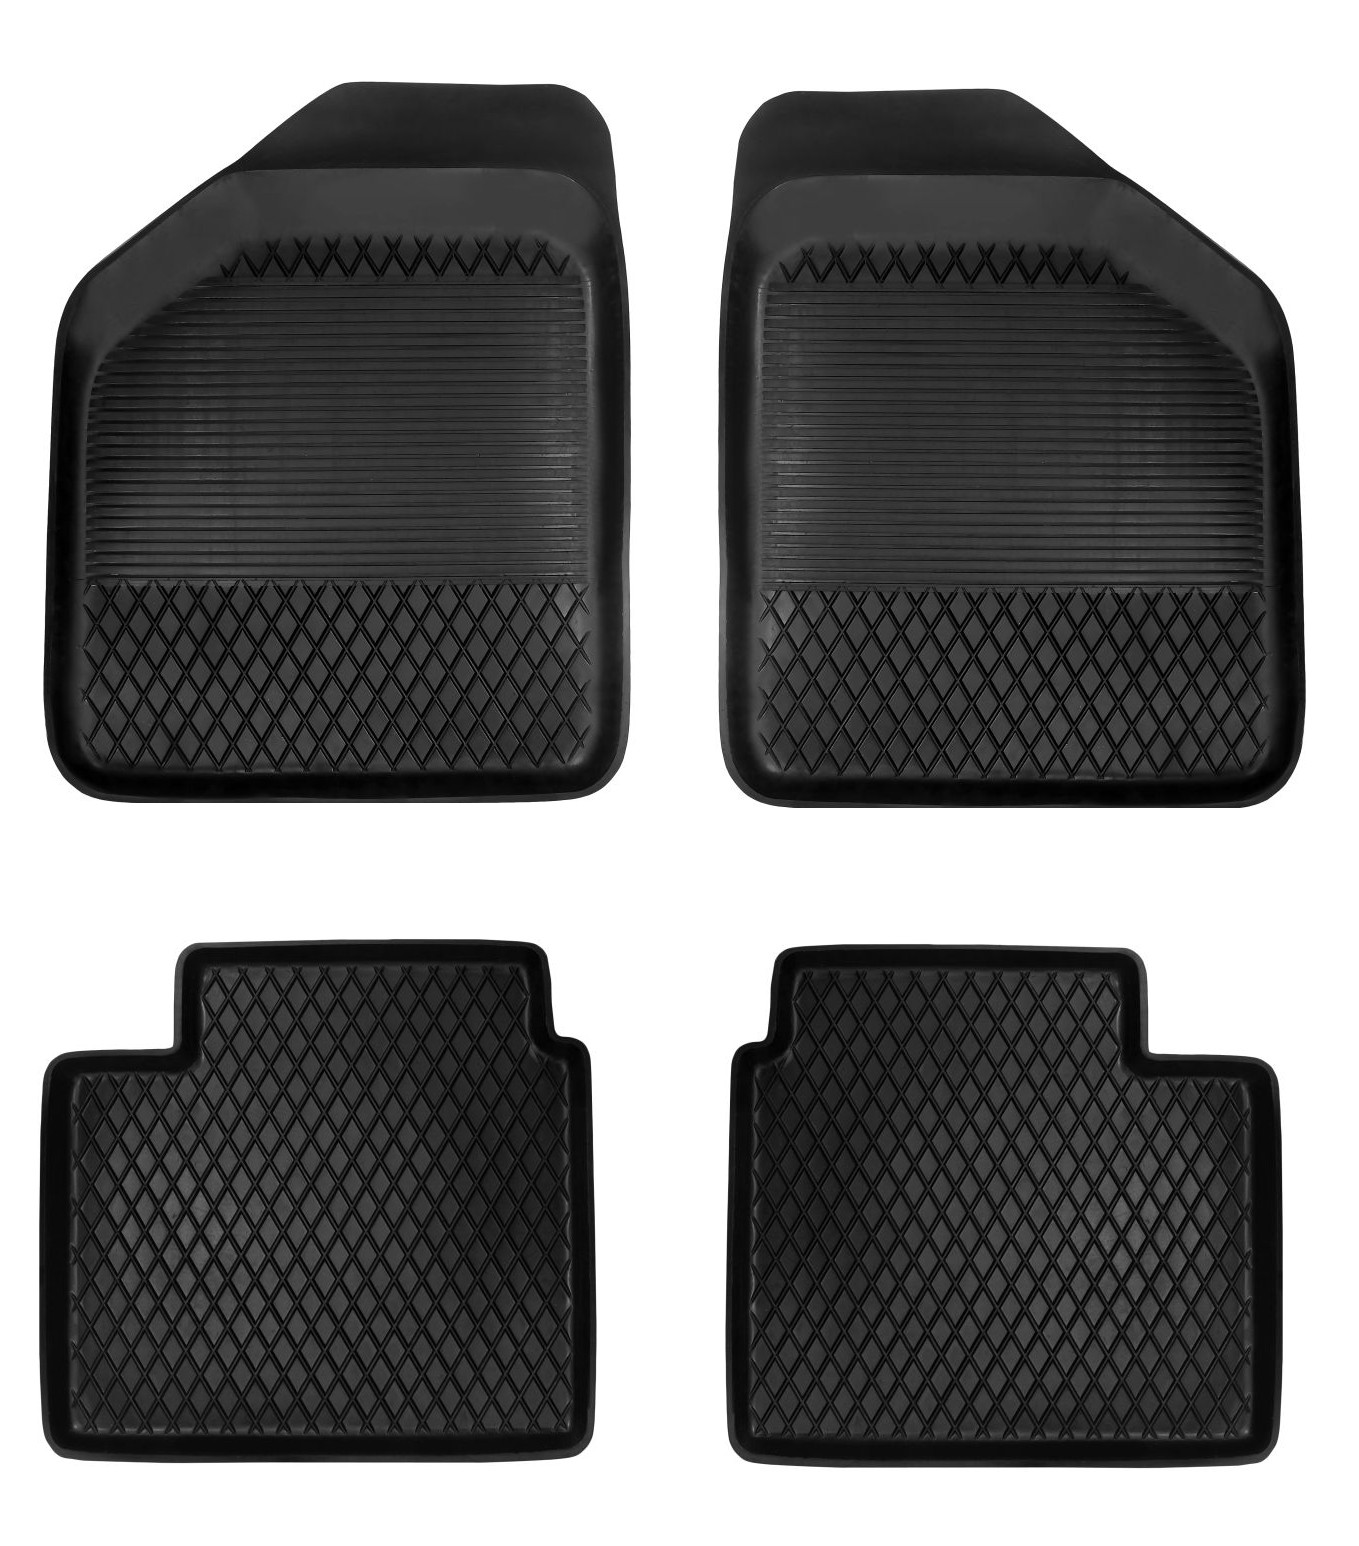  Dywaniki gumowe do samochodu Honda City V 2008 - 2013  ( komplet lub dywanik na sztuki, przody, tyły ) czarne pod wymiar